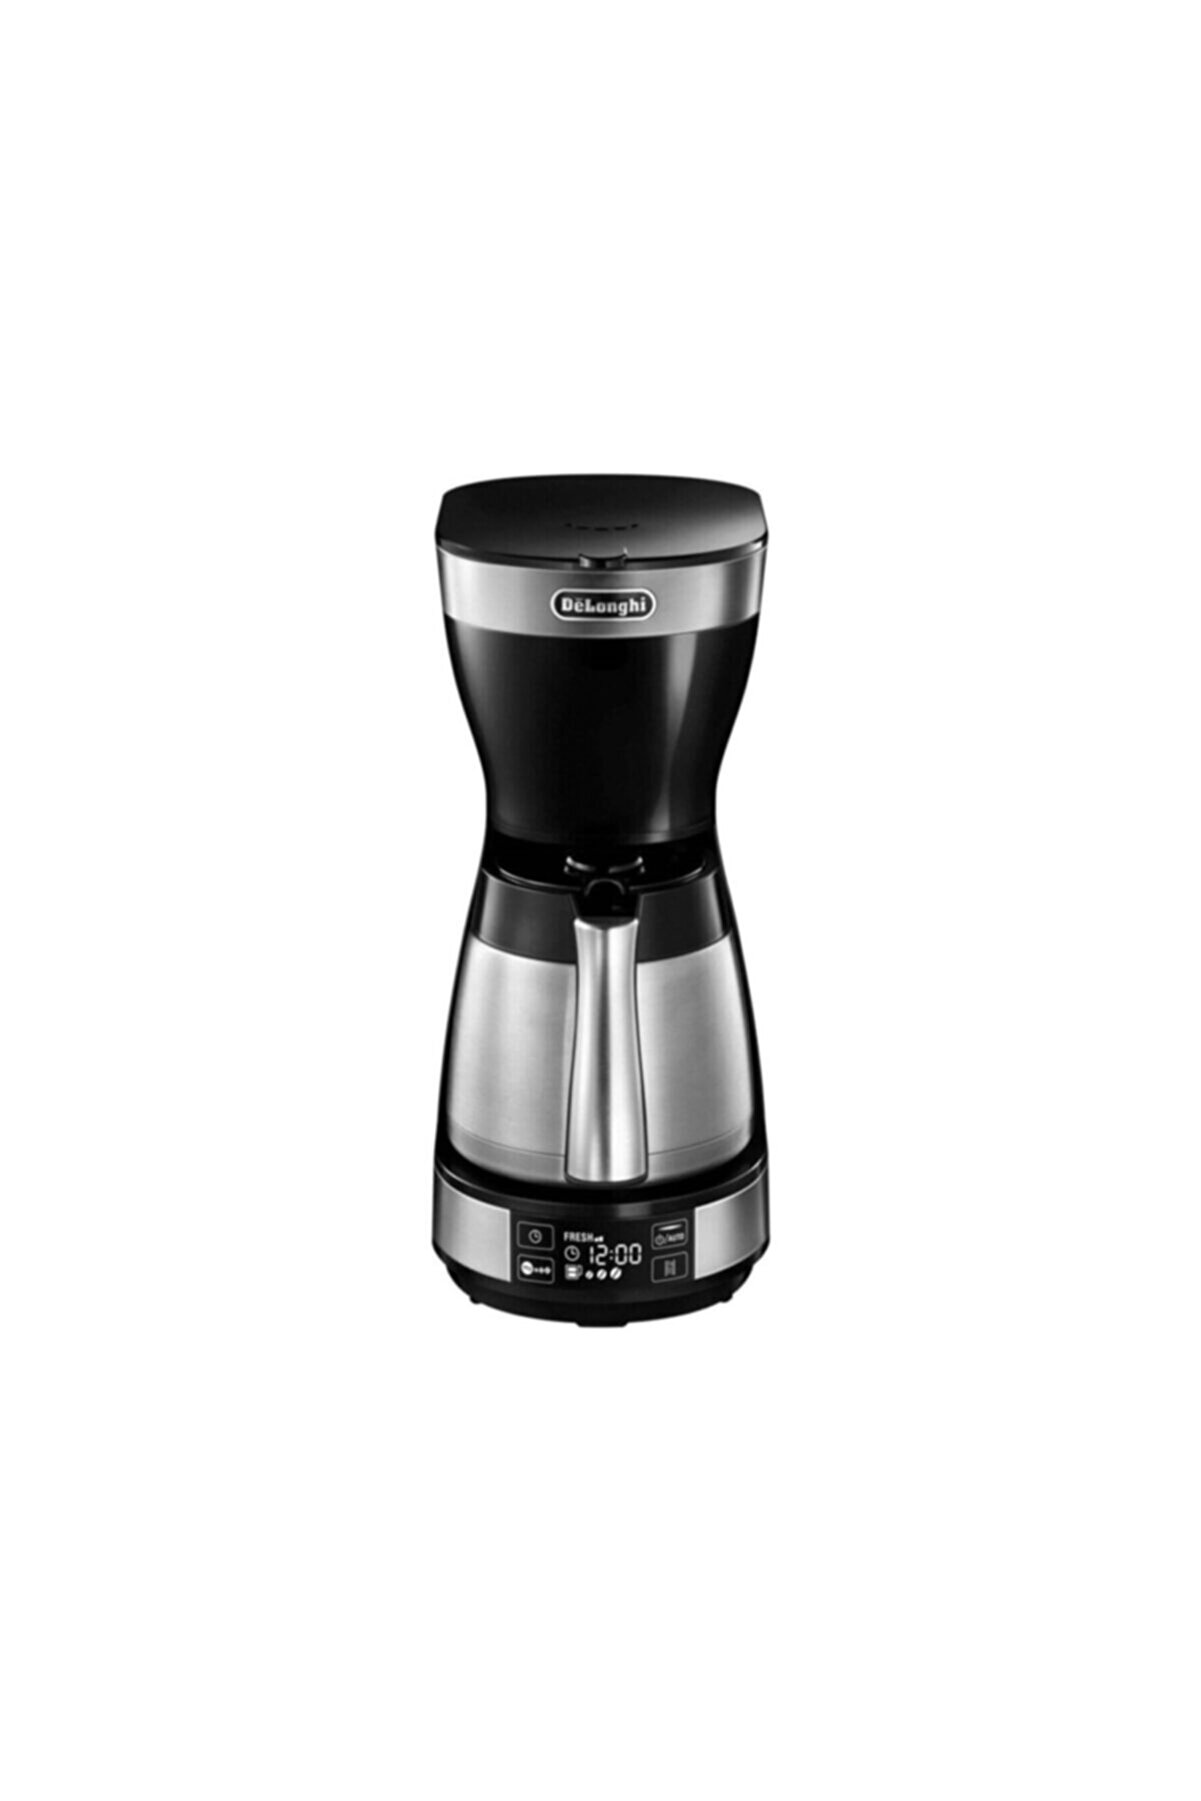 Delonghi Icm16731 Filtre Kahve Makinesi Siyah